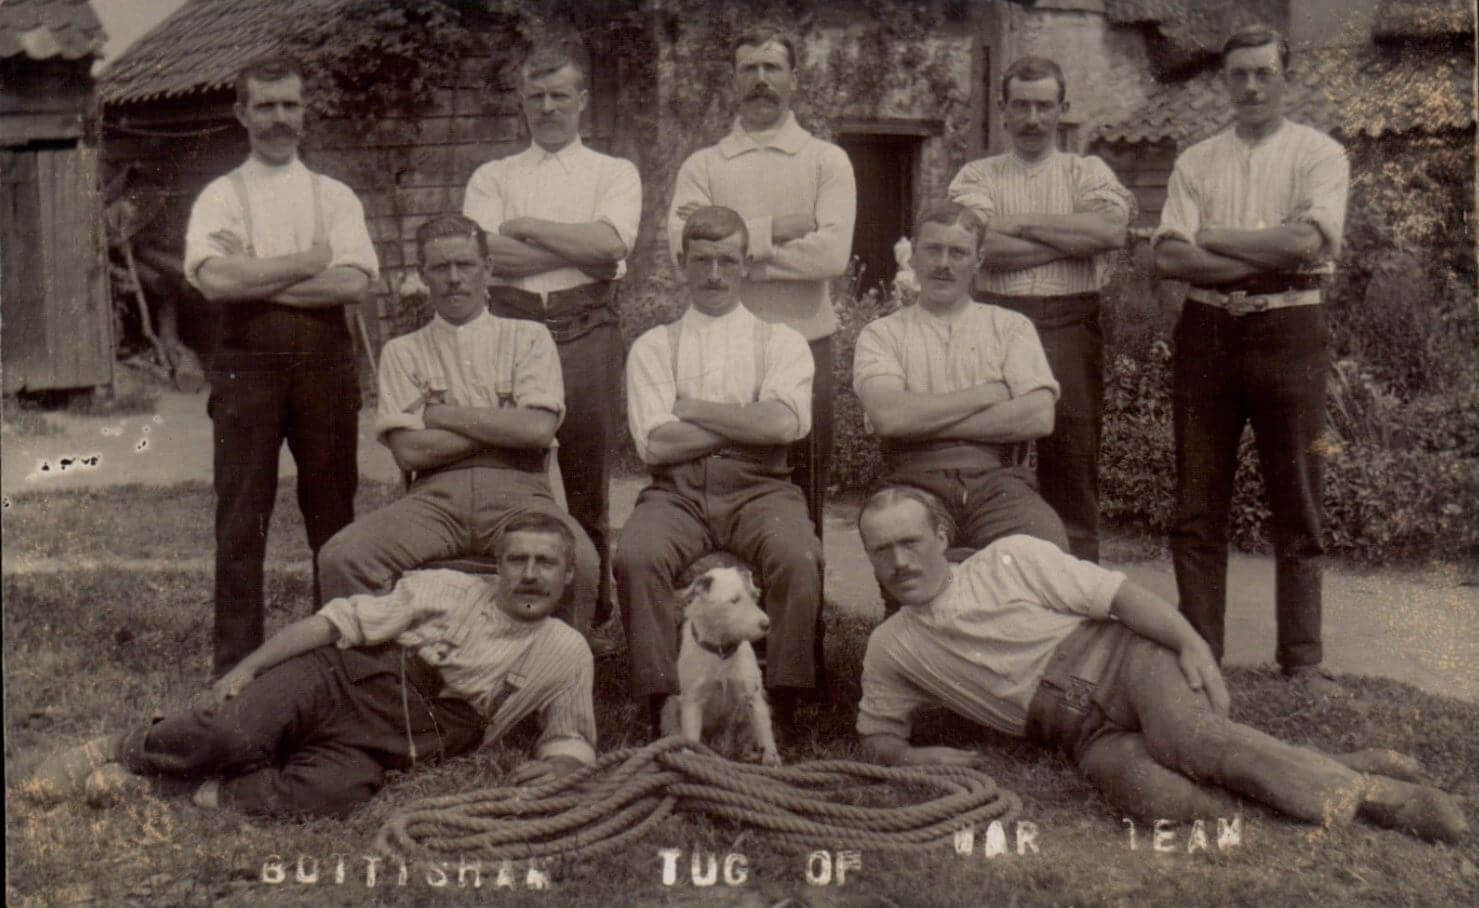 Bottisham tug of war team c1915